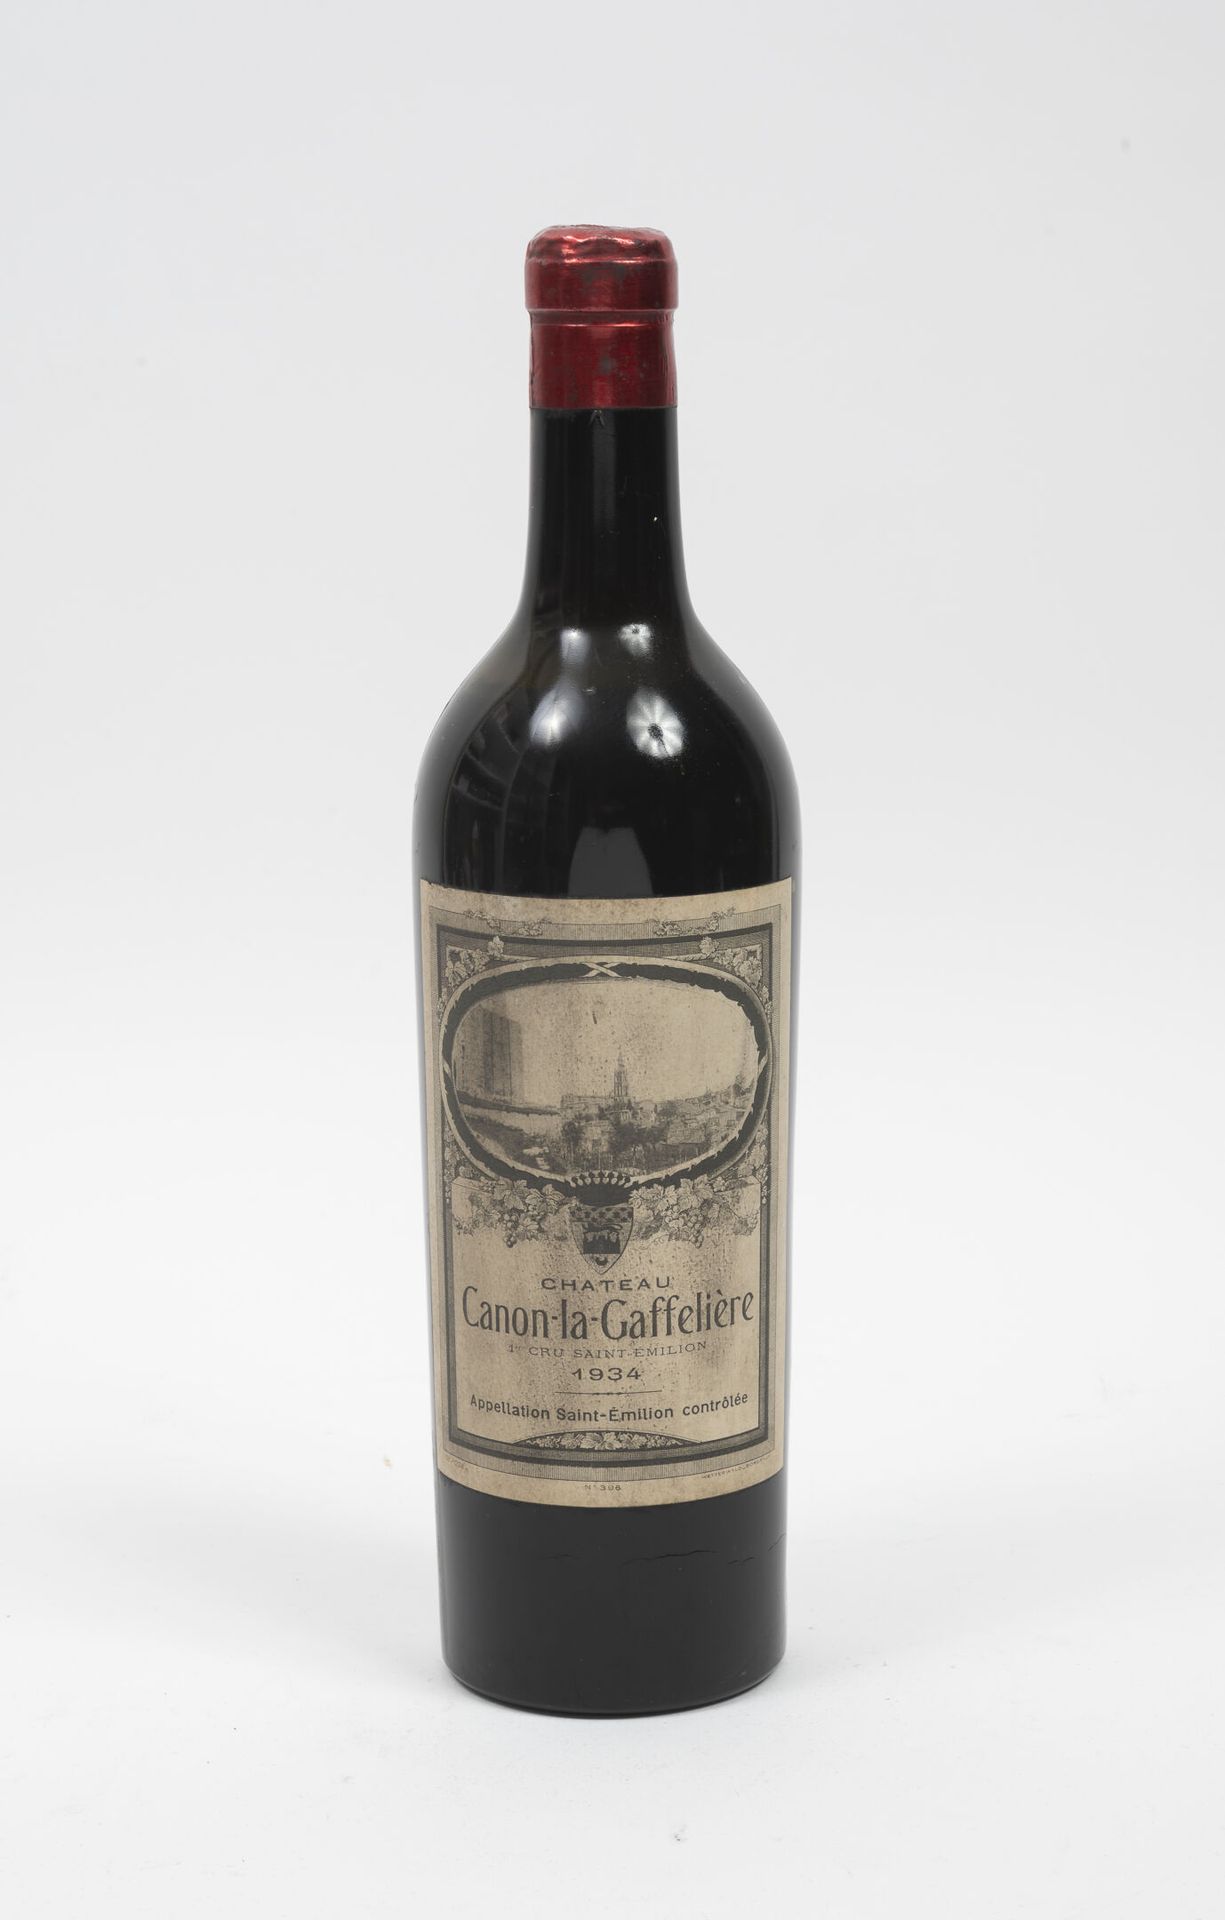 CHÂTEAU CANON-LA-GAFFELIERE 1 bouteille, 1934.

Niveau mi-épaule - basse épaule.&hellip;